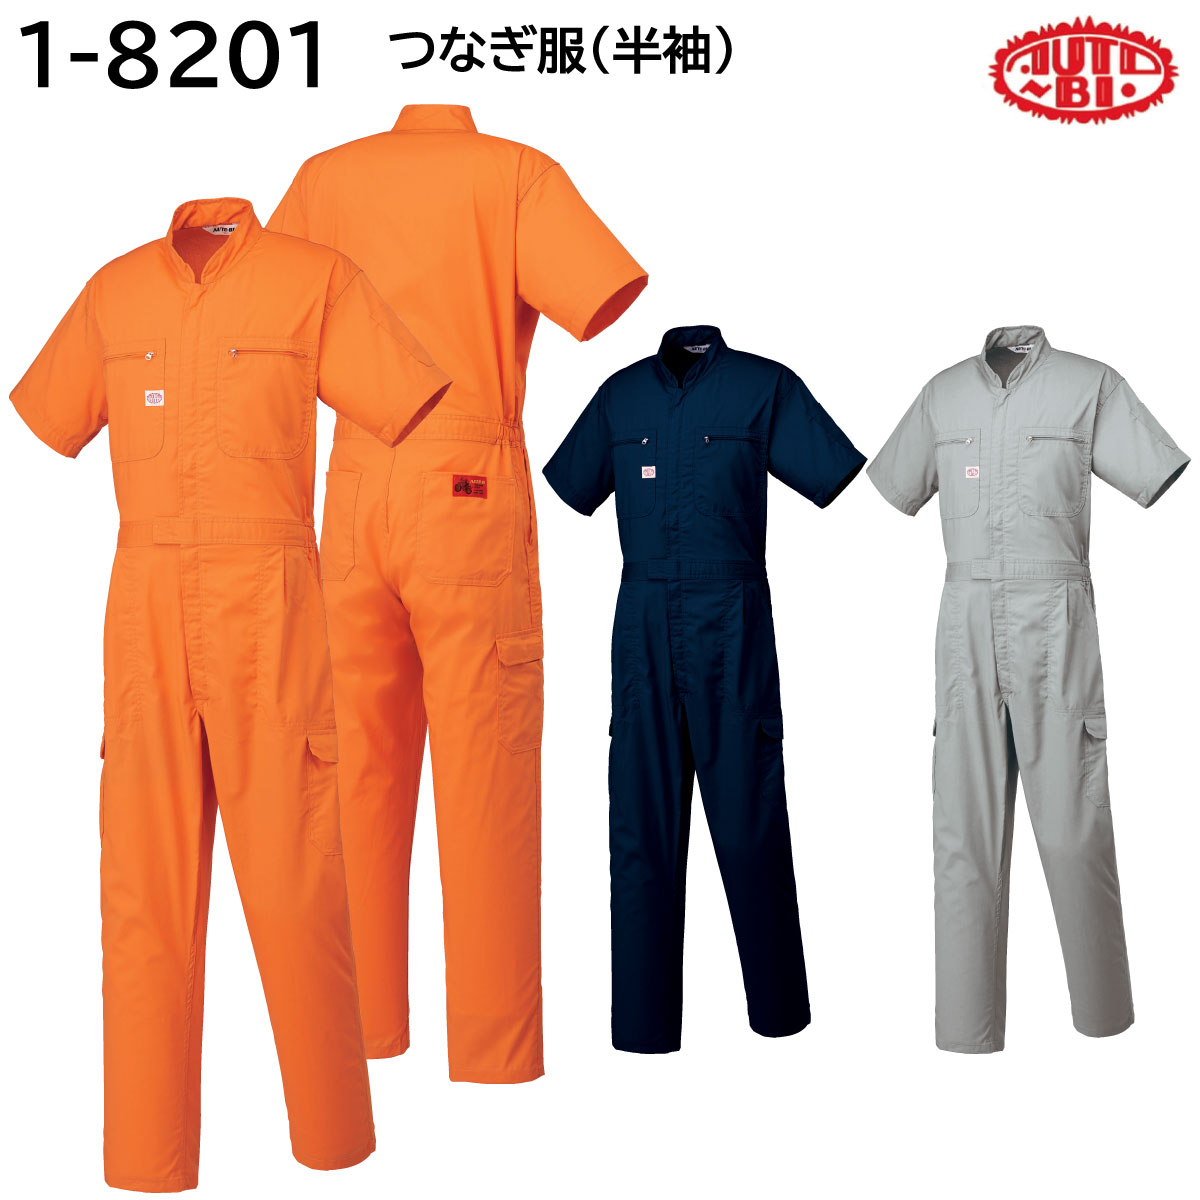 低価格の つなぎ服(半袖) 1-8201 S?LL AUTO-BI 山田辰 春夏 3色展開 